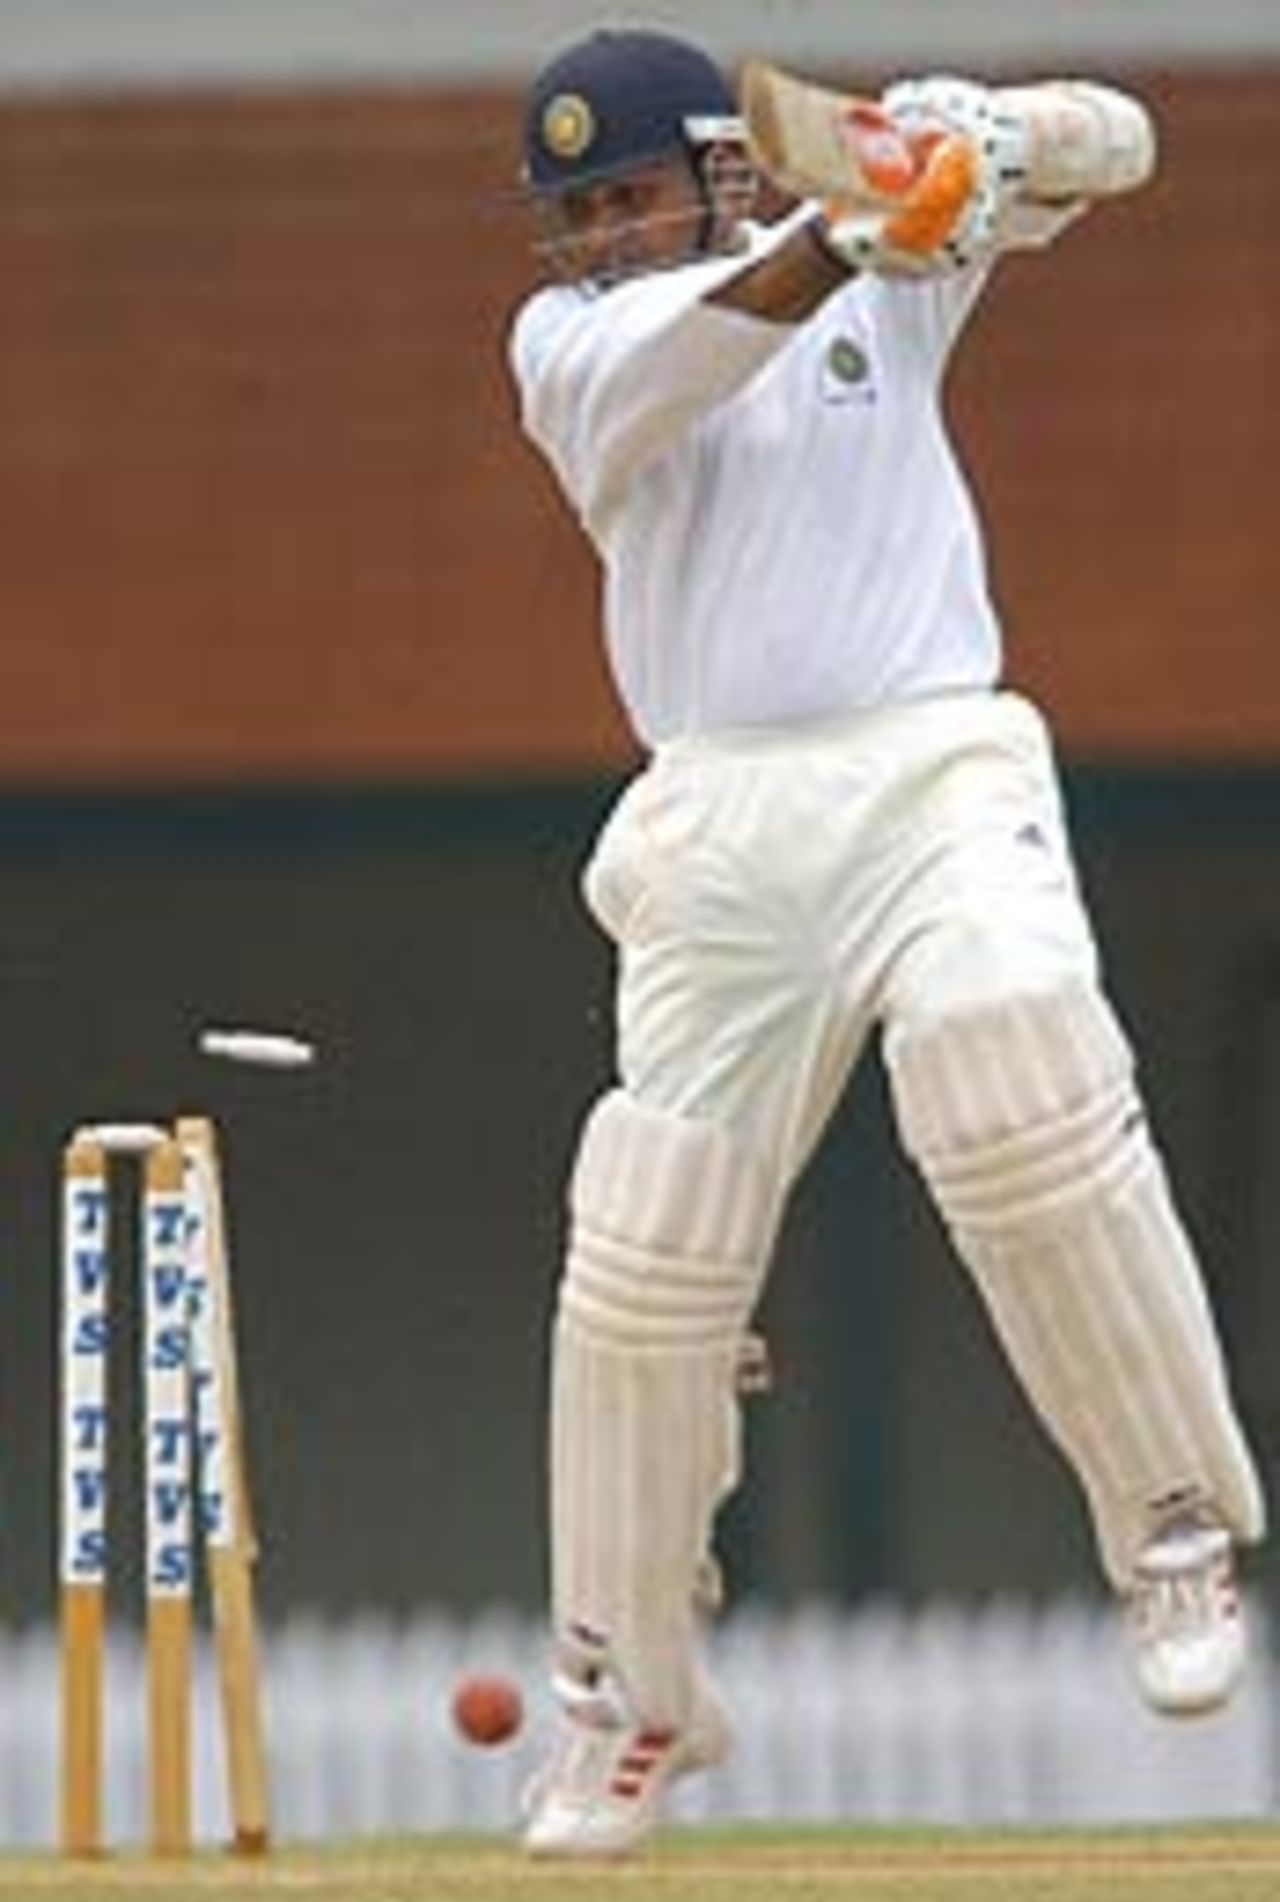 Virender Sehwag bowled for 16, Mumbai v Rest of India, September 19, 2003